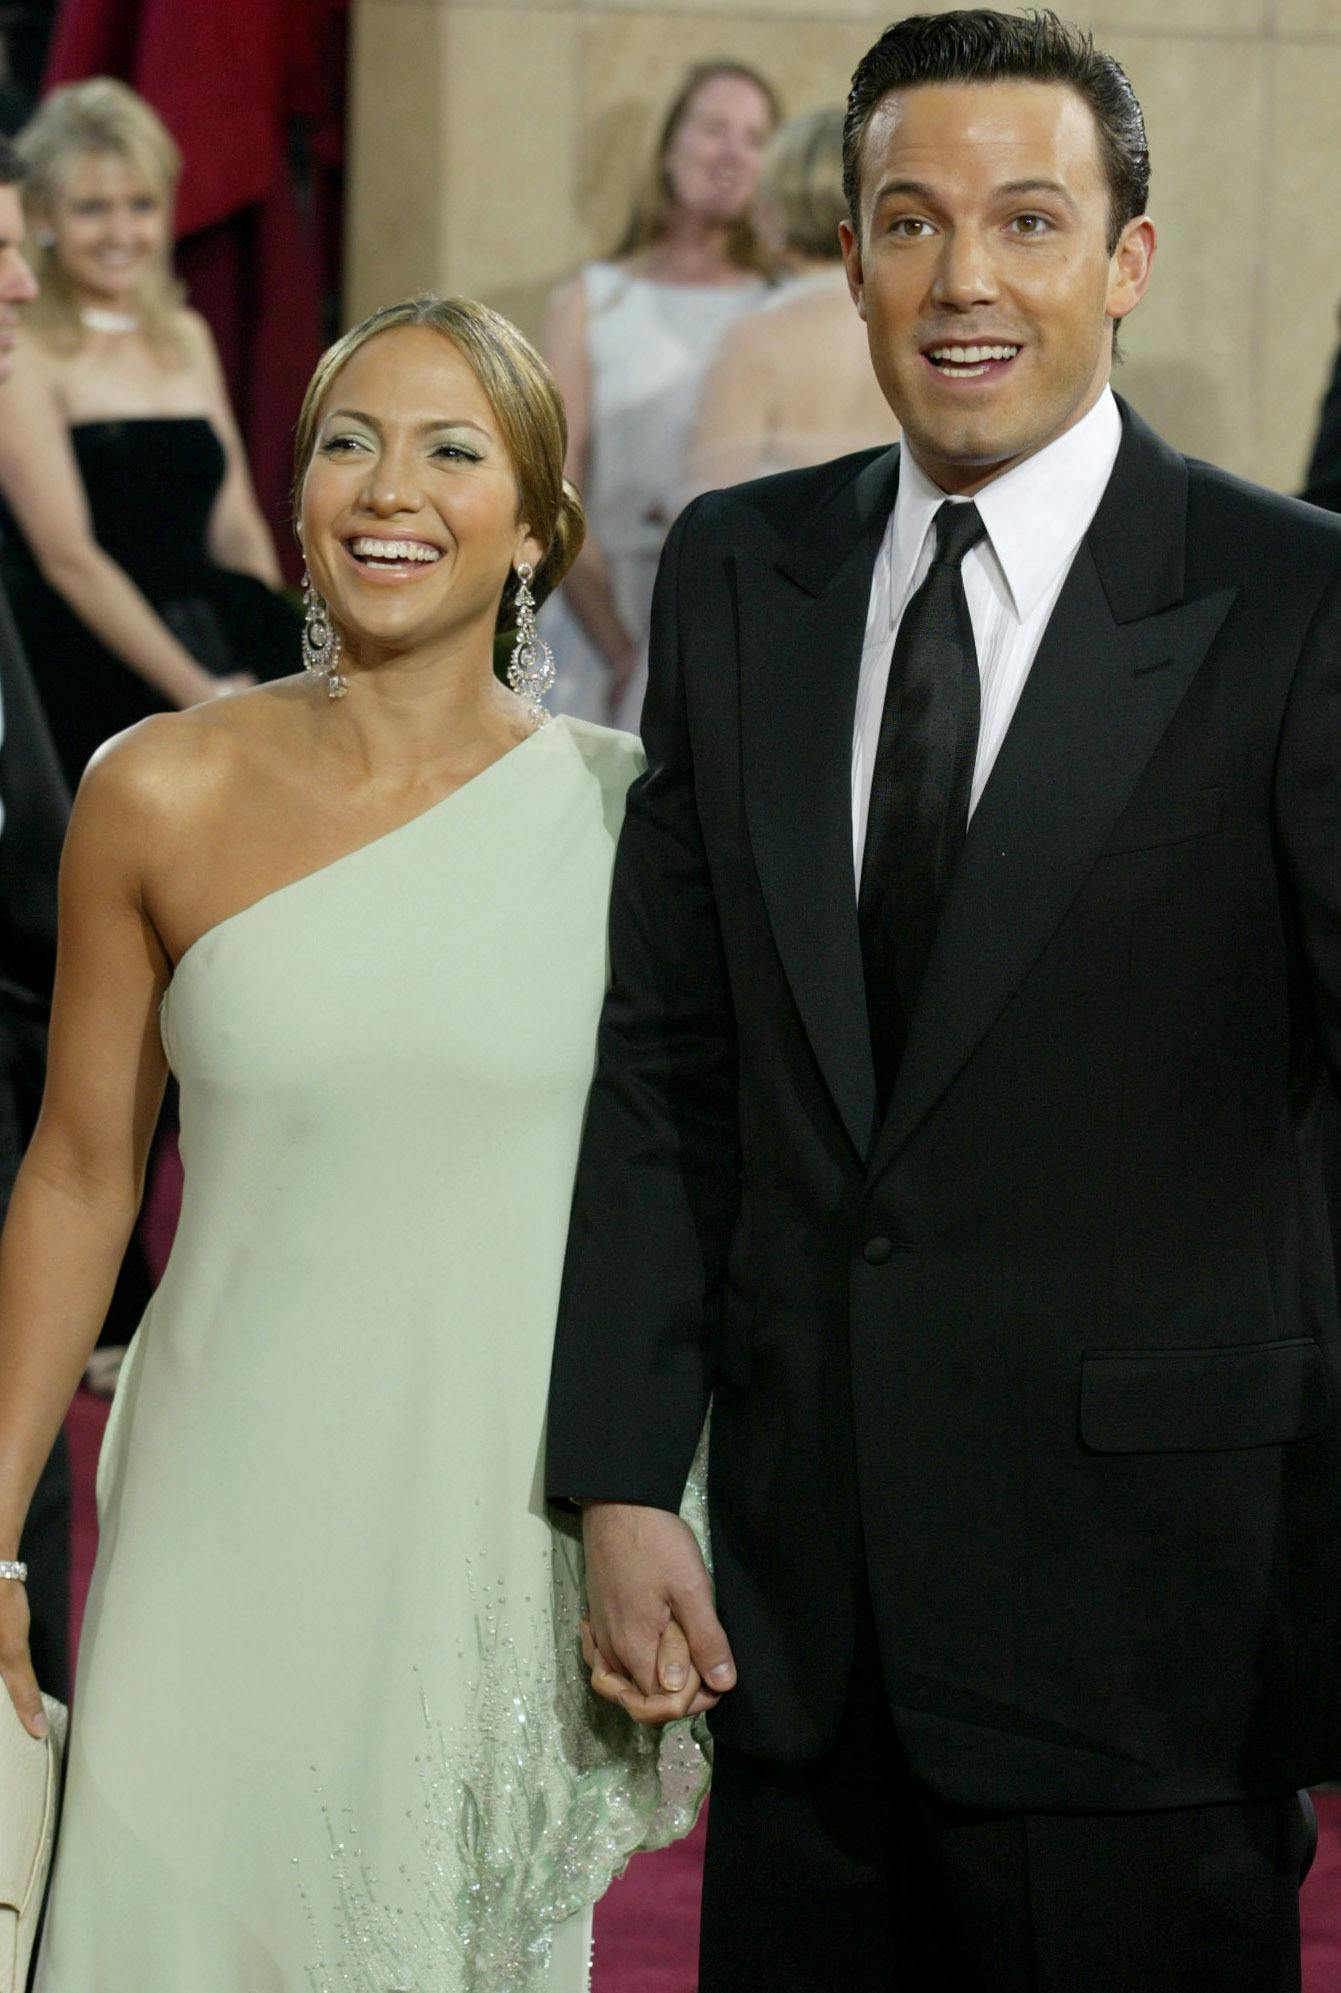 Jennifer Lopez og Ben Affleck var kærester - et af verdens mest celebre par, faktisk - tilbage i 2003. Ifølge gommen var det hele tiden meningen, at de skulle finde sammen efter de havde fået deres respektive unger
